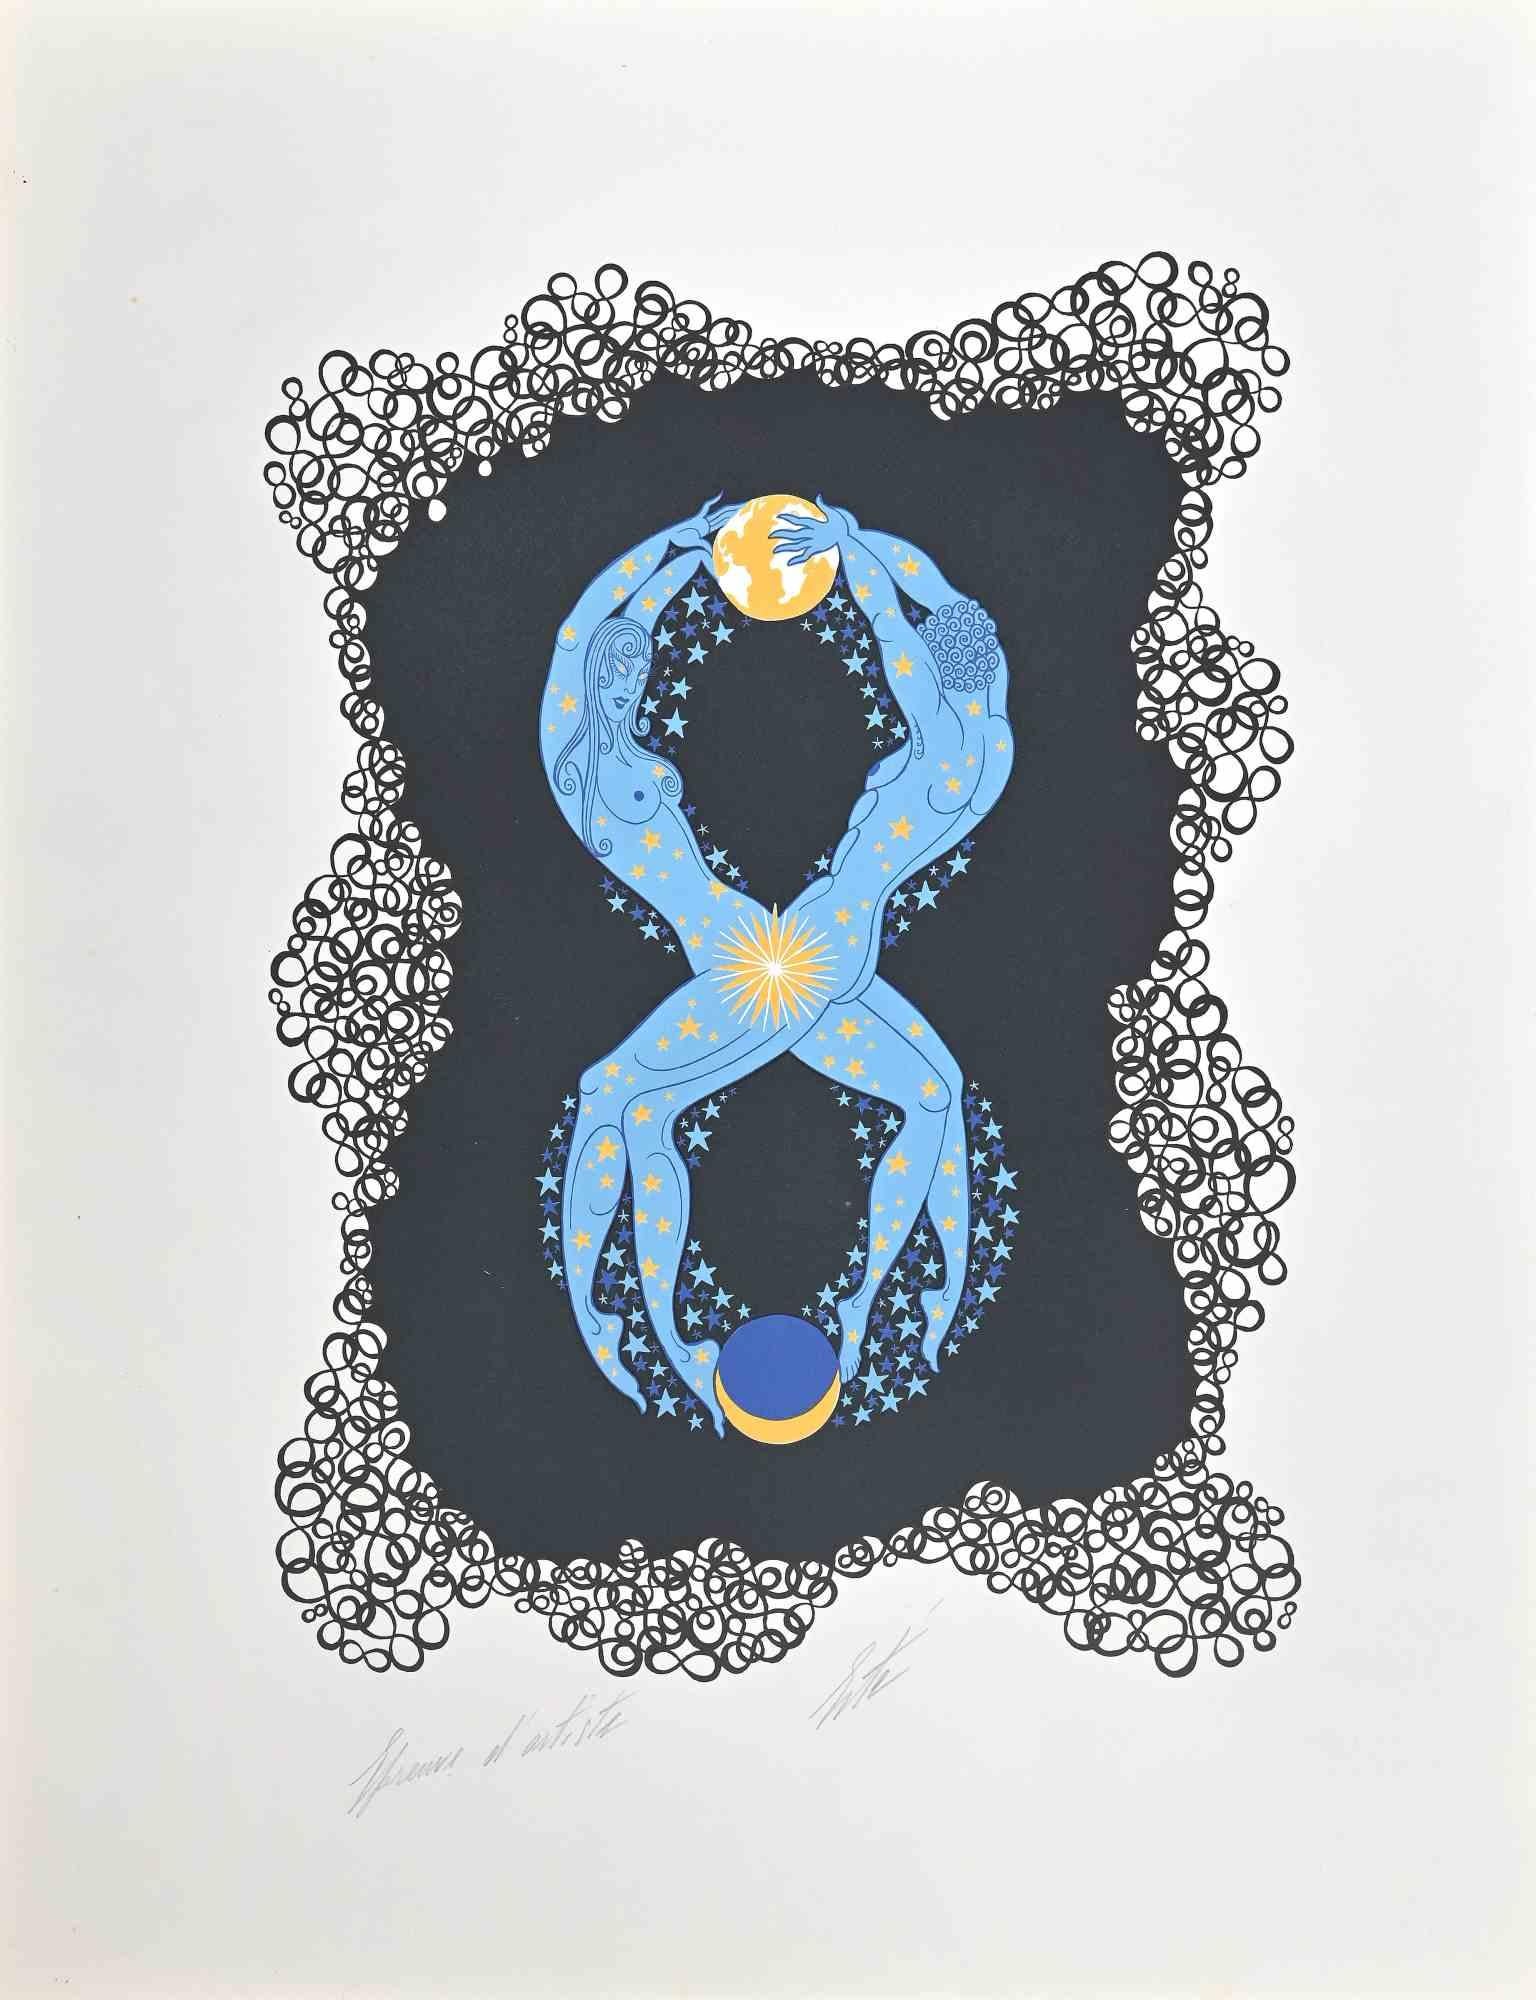 Le 8 est une œuvre d'art contemporain réalisée en 1968 par Erté (Romain de Tirtoff).

Lithographie en couleurs mixtes sur papier.

L'œuvre est tirée de la série "Les Chiffres".

Signé à la main dans la marge inférieure.

Preuve d'artiste.

Bon état